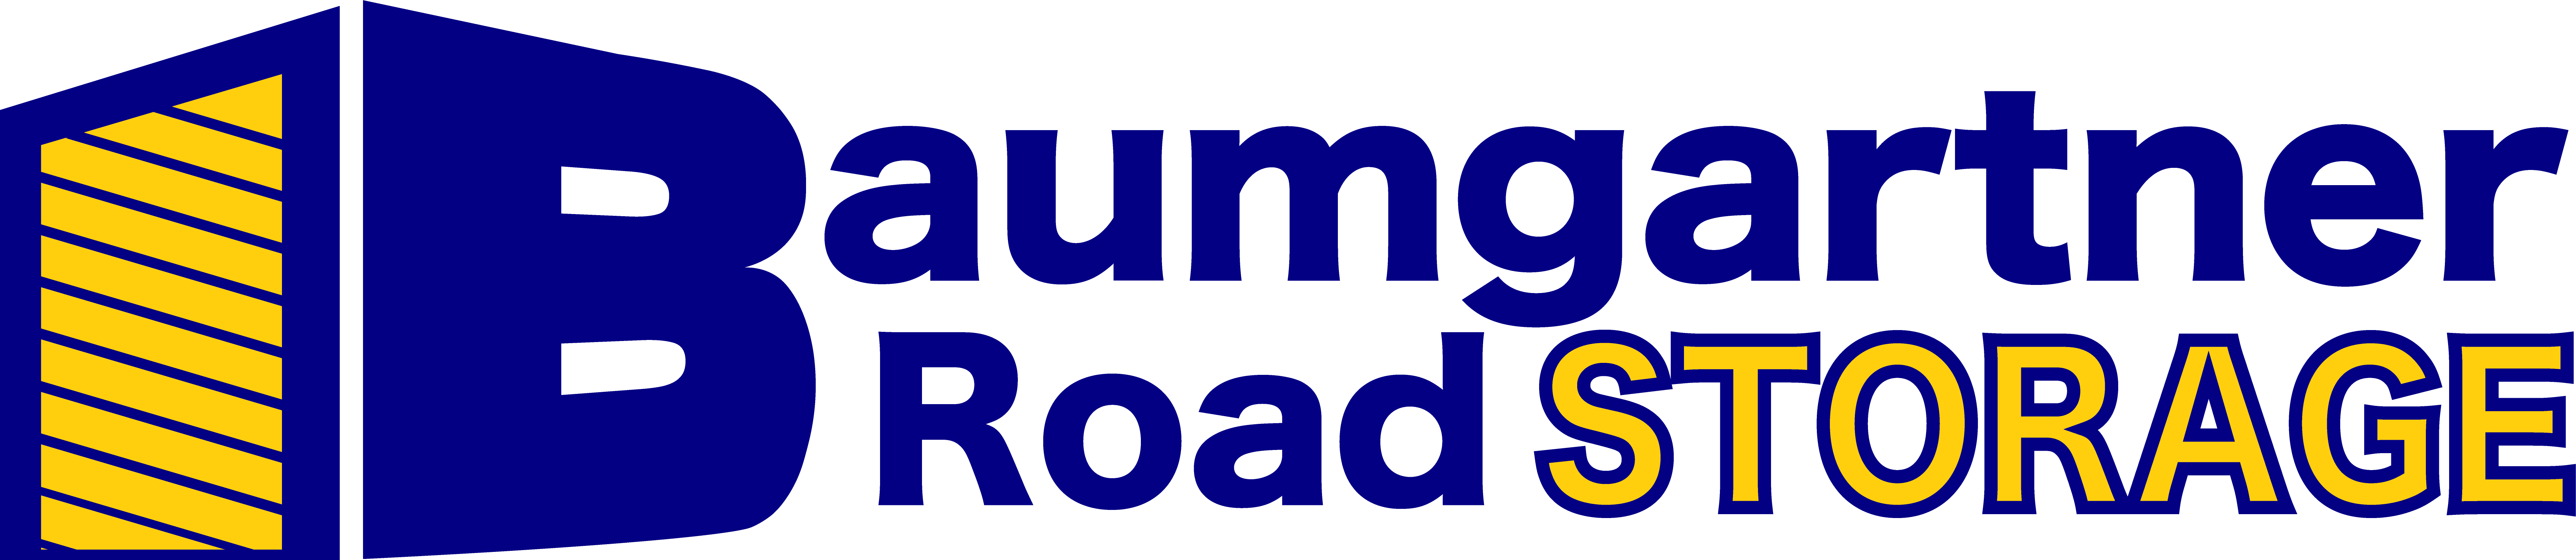 Baumgartner Road Storage